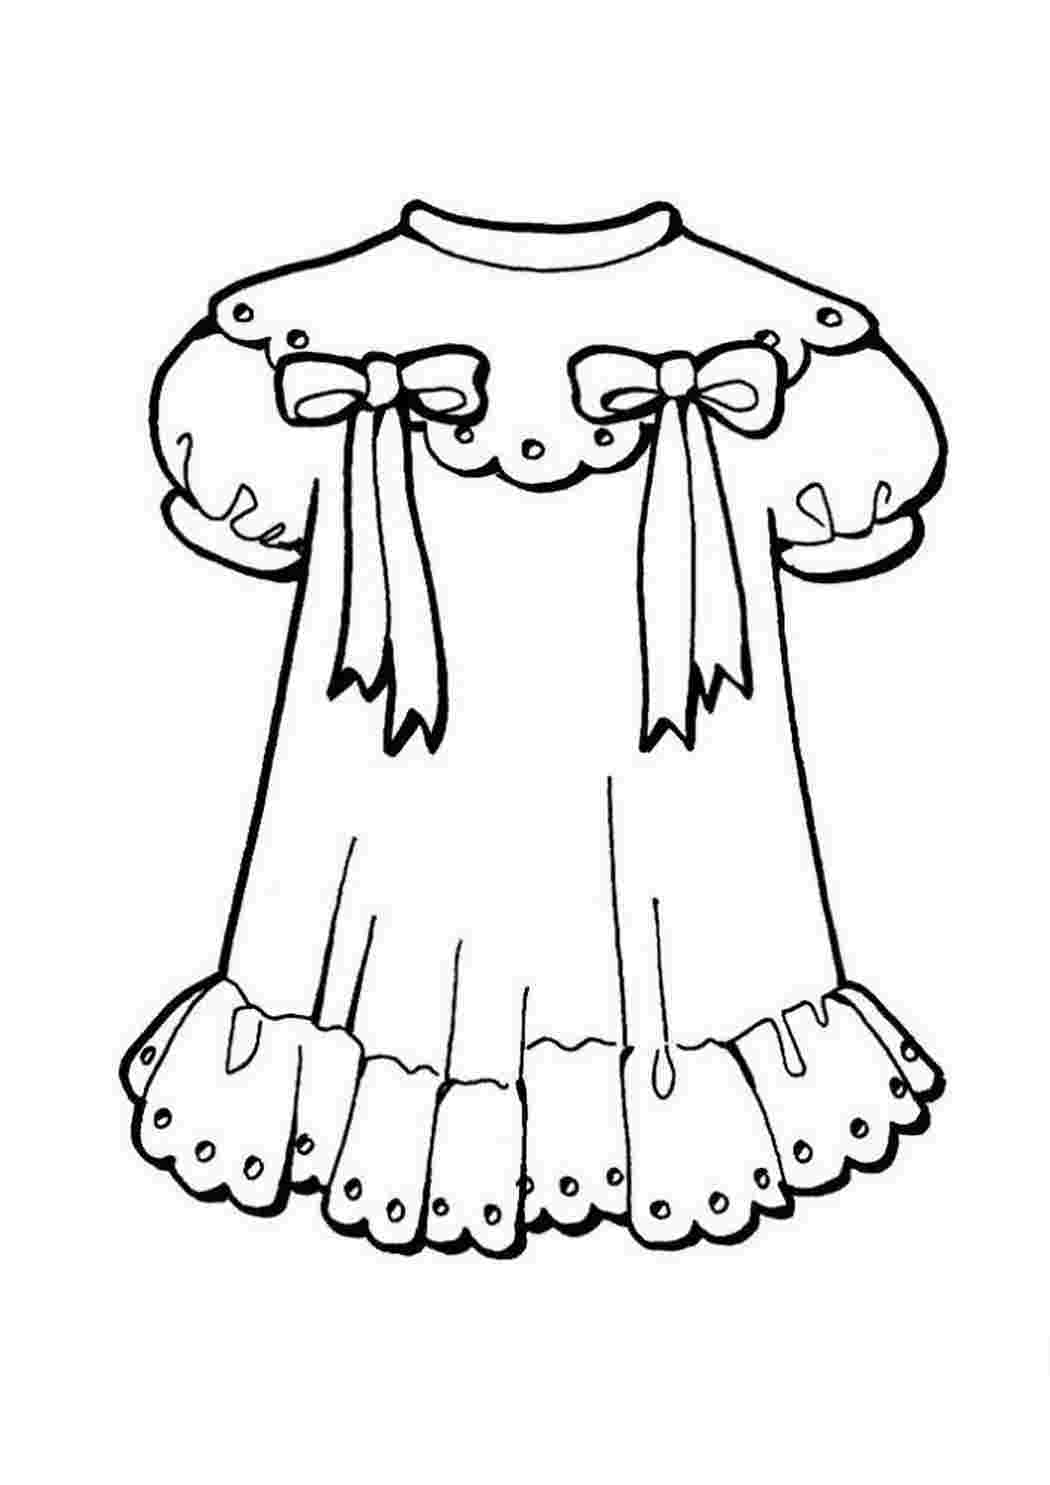 Платье для девочки — раскраска для детей. Распечатать бесплатно.